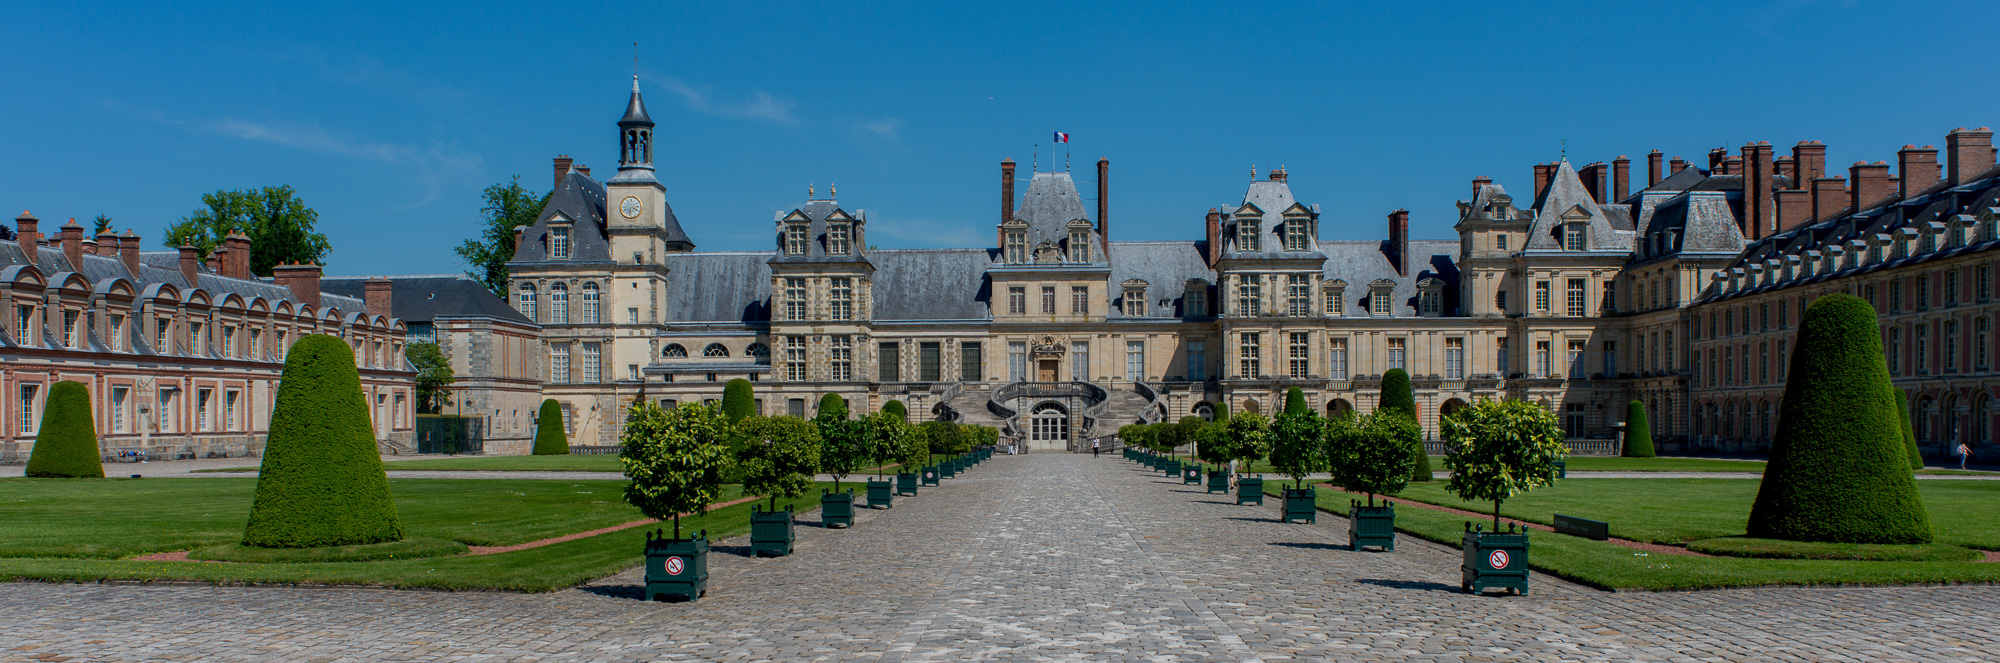 Château de Fontainebleau. Cour du Cheval Blanc